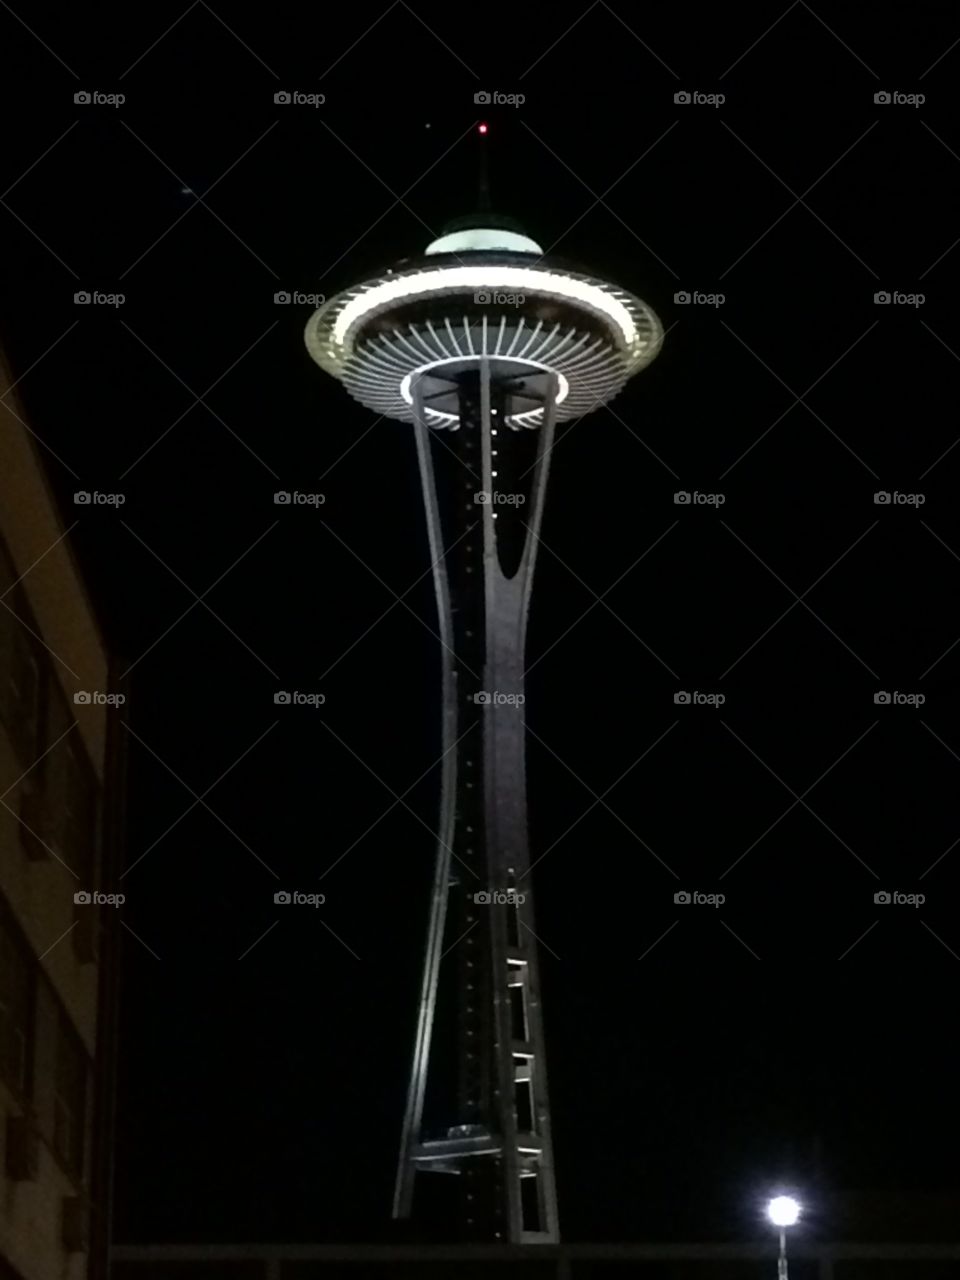 Seattle space needle . Space needle in Seattle lit up at night. 